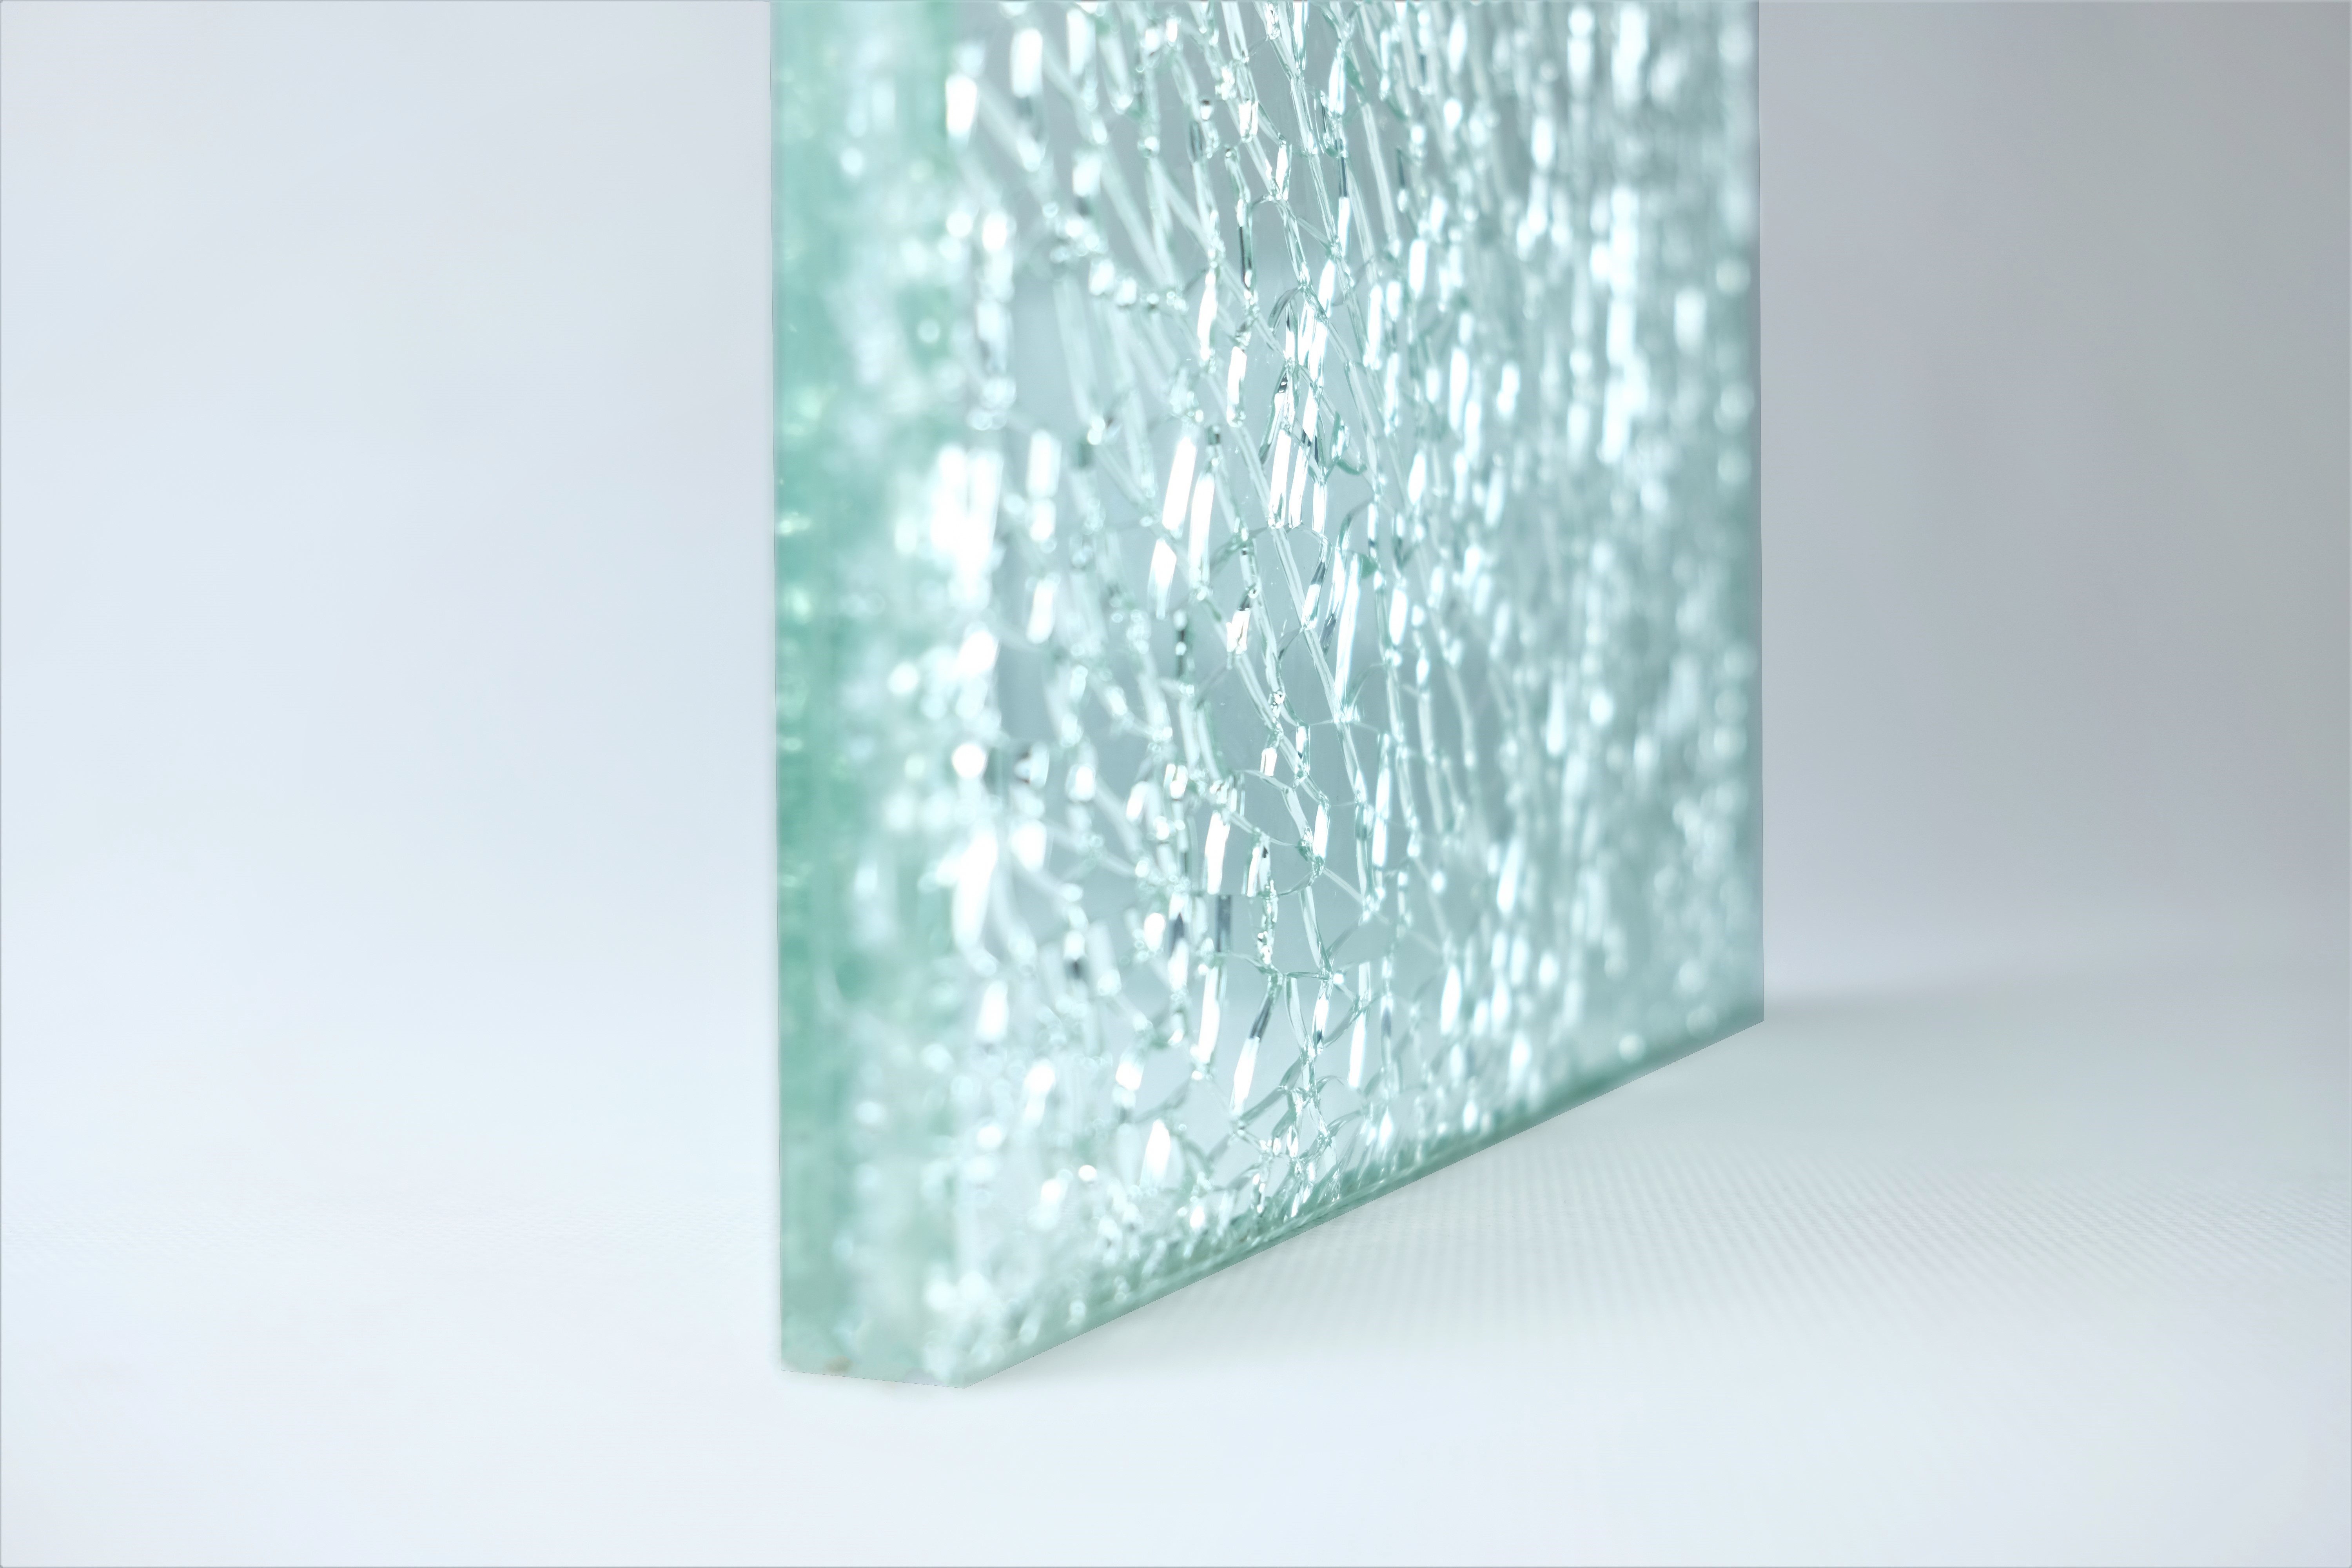 Crackle glass là một trong những vật liệu nội thất đang được yêu thích nhất hiện nay. Chúng tạo nên sự độc đáo, huyền bí cho một không gian nội thất. Hình ảnh về crackle glass sẽ giúp bạn thấy rõ hơn vẻ đẹp lấp lánh của nó.